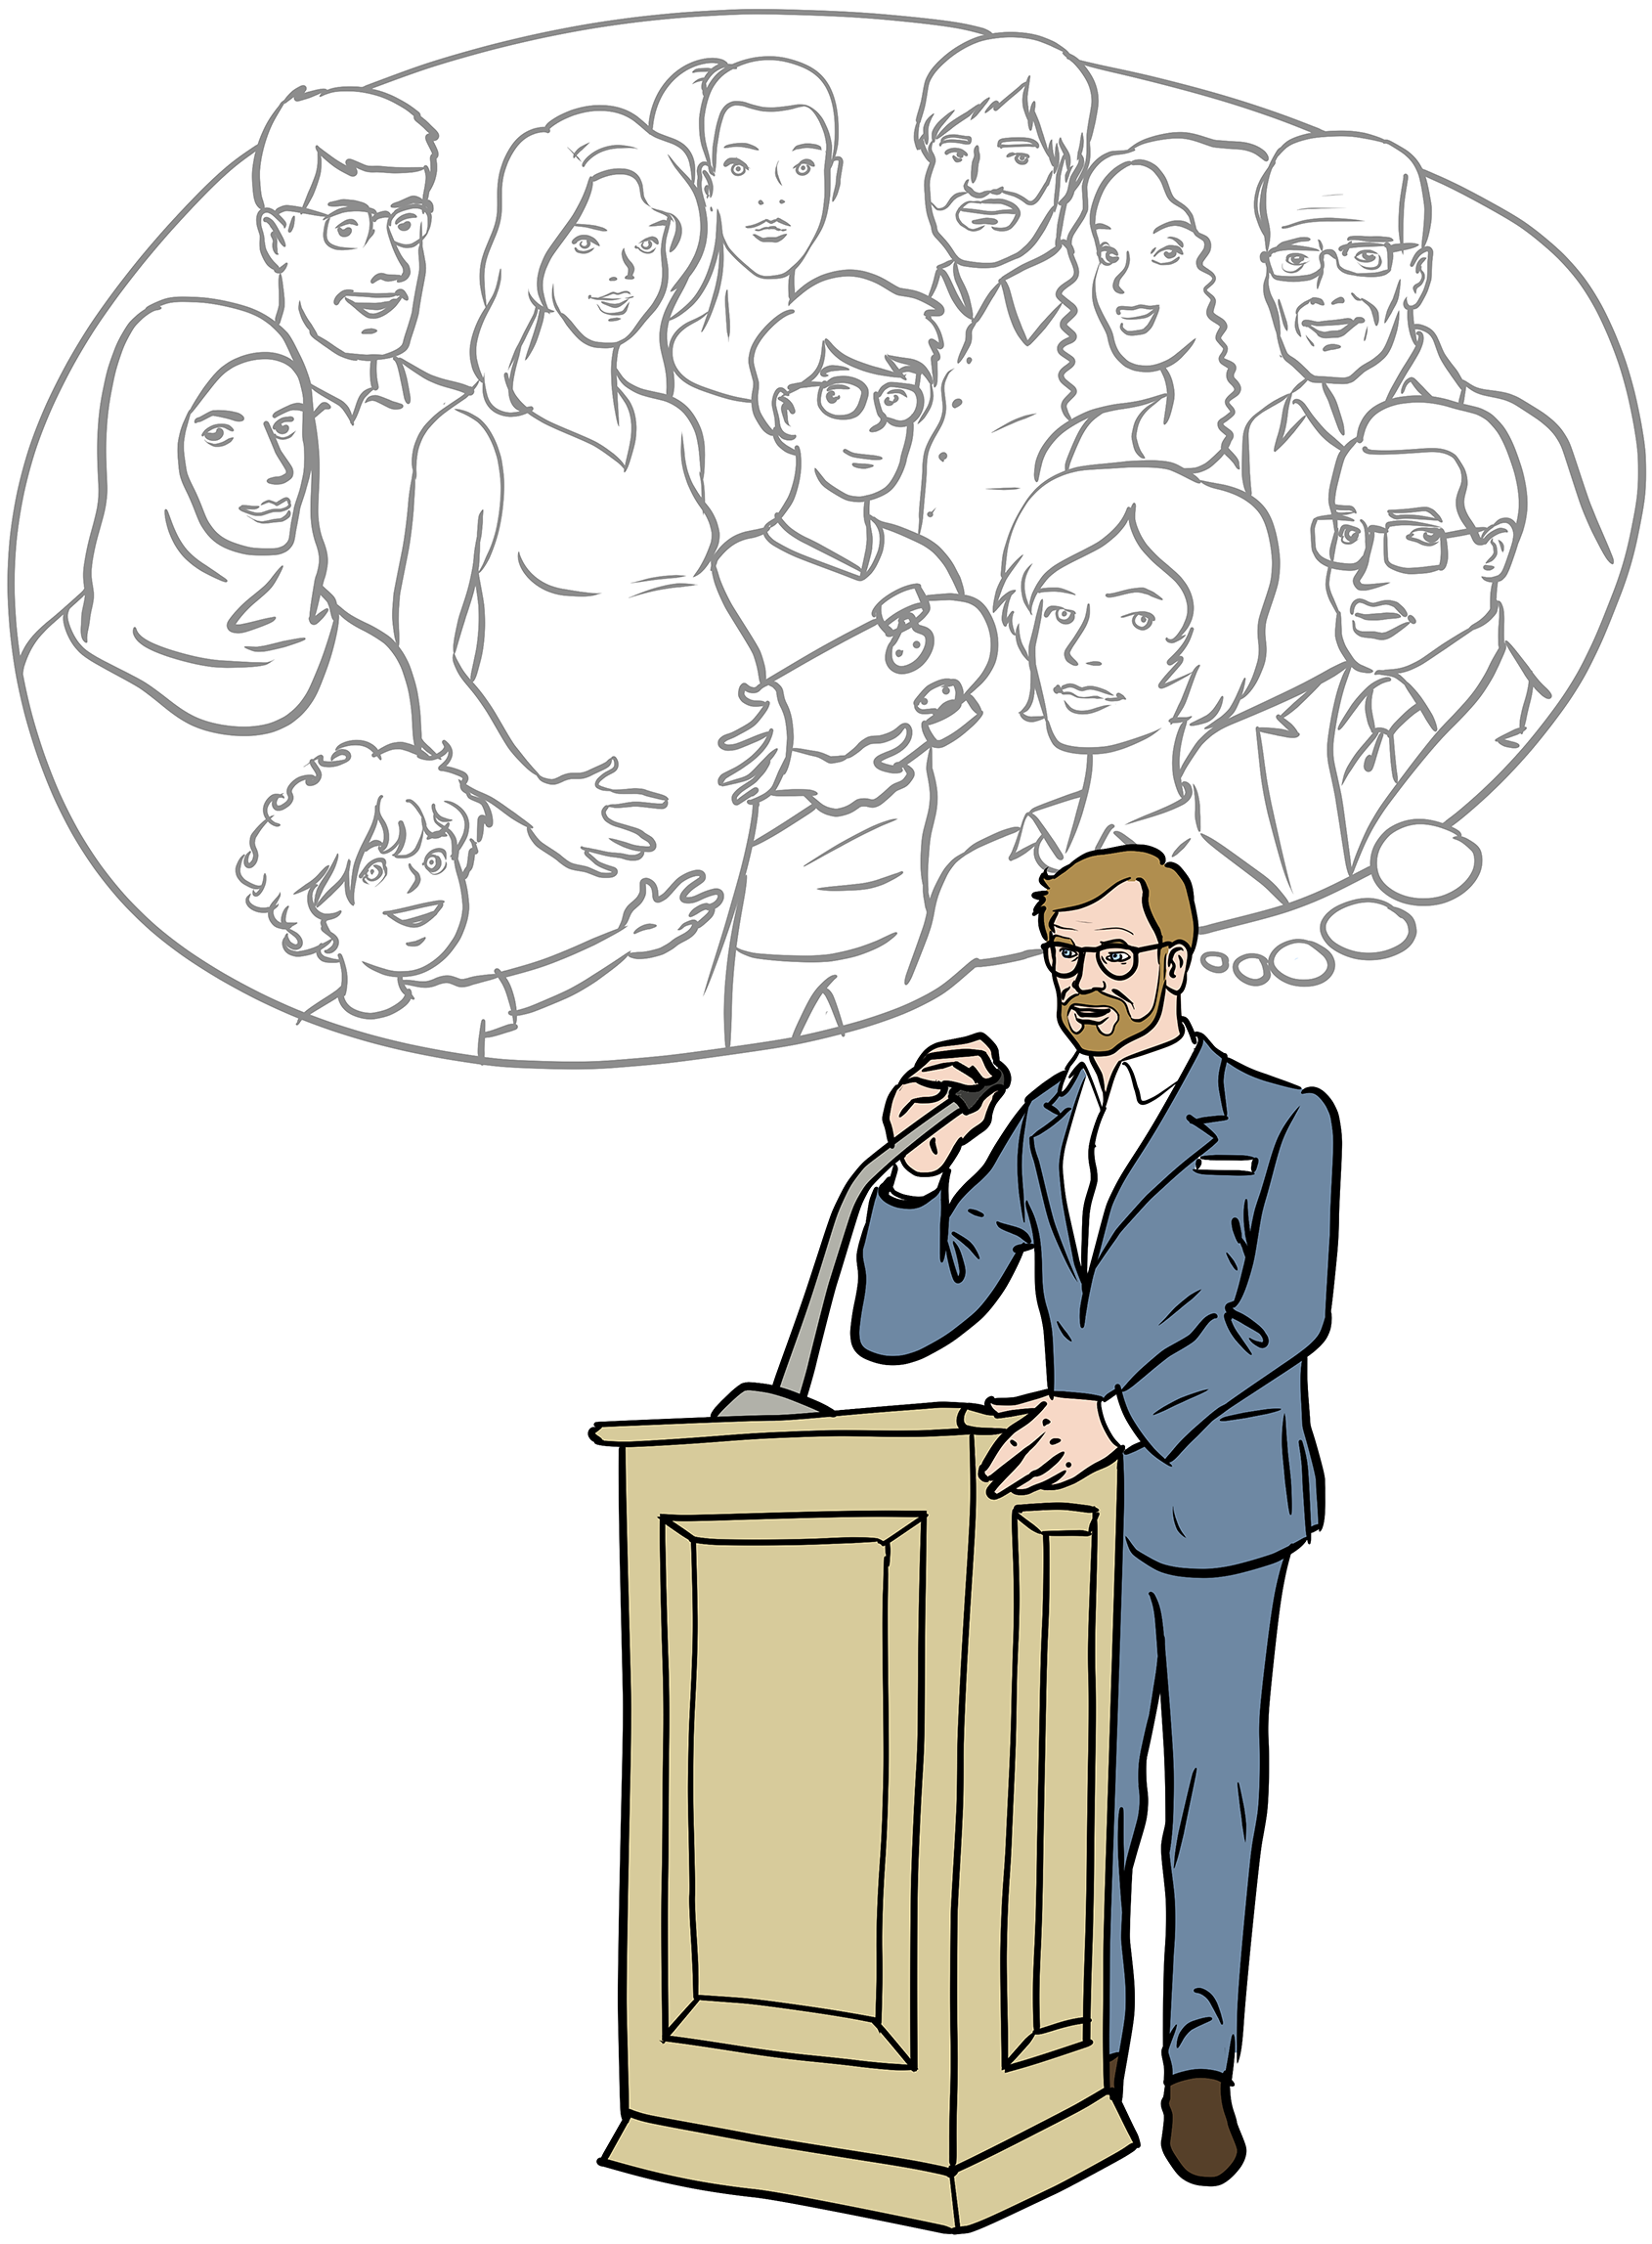 Ein Mann mittleren Alters mit Vollbart und Brille, gekleidet mit einem weißen Hemd und einem blauen Anzug, steht an einem Rednerpult mit Mikrophon. Der Mann spricht. Über ihm ist eine Gedankenblase. In dieser sieht man Personen unterschiedlichsten Geschlechts und Alters.